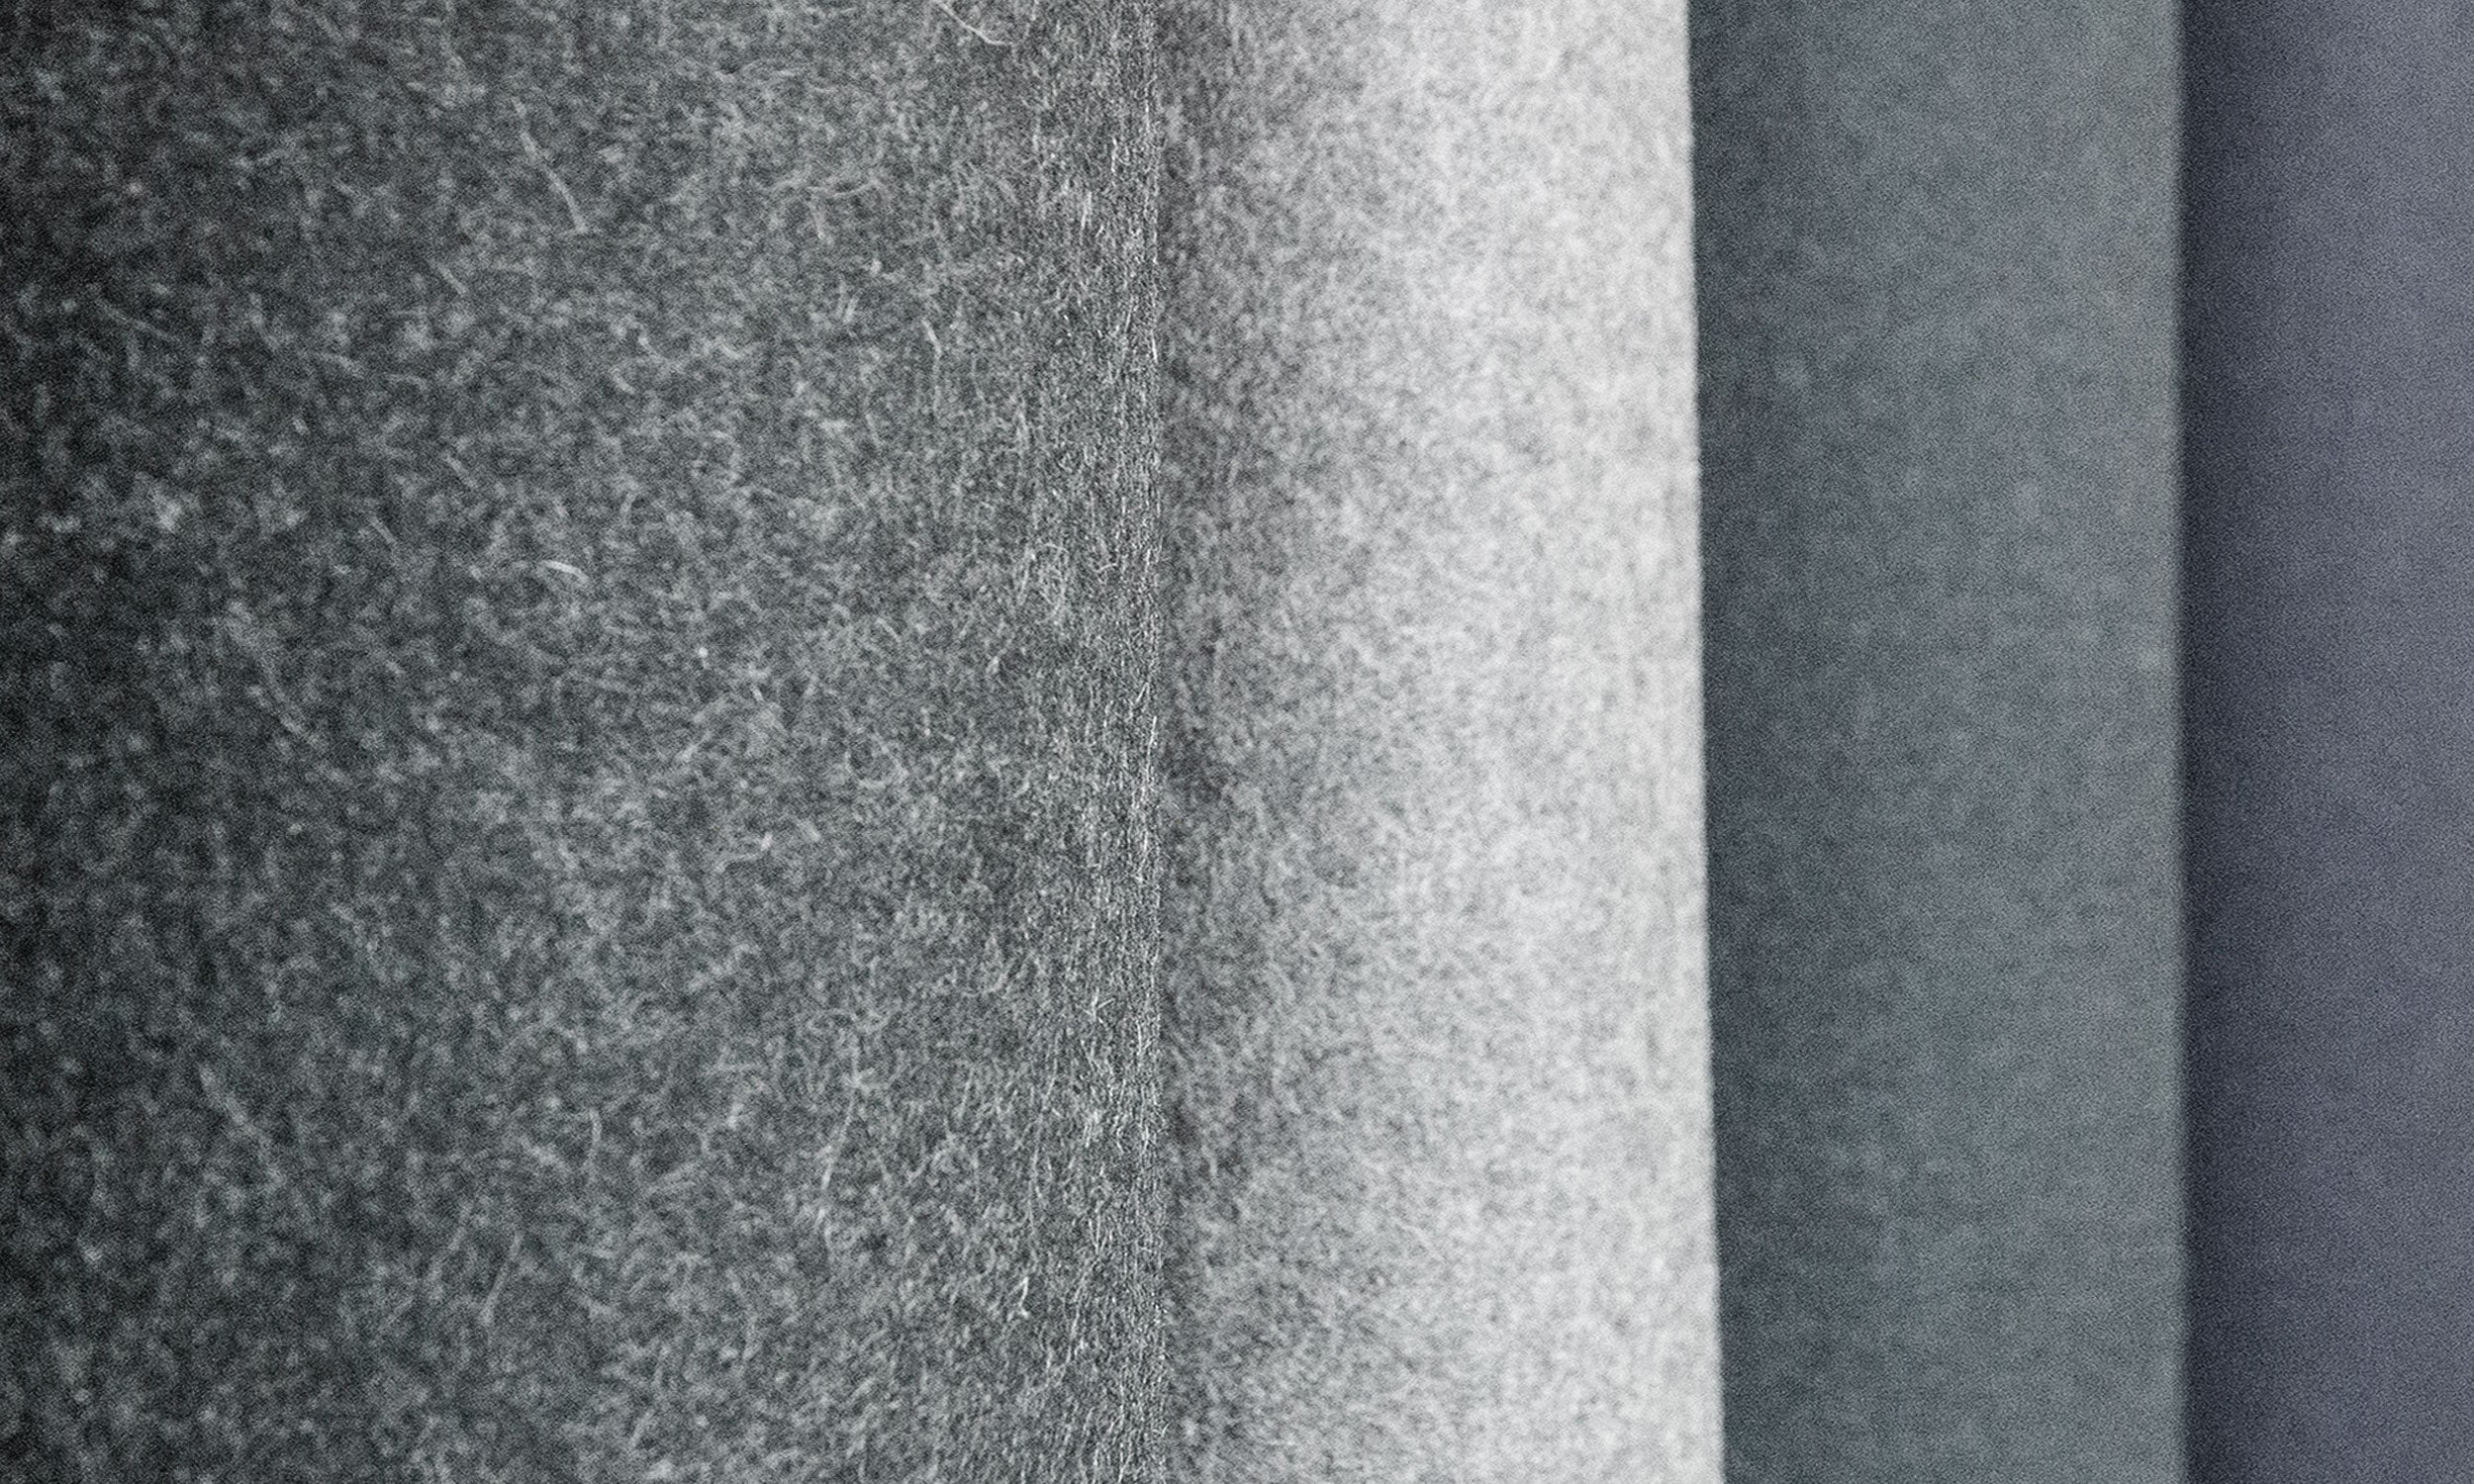 fest - Wollfilz Meterware gefärbt, aus 100% Schafwolle (Designfilz - 27 Farben verfügbar)